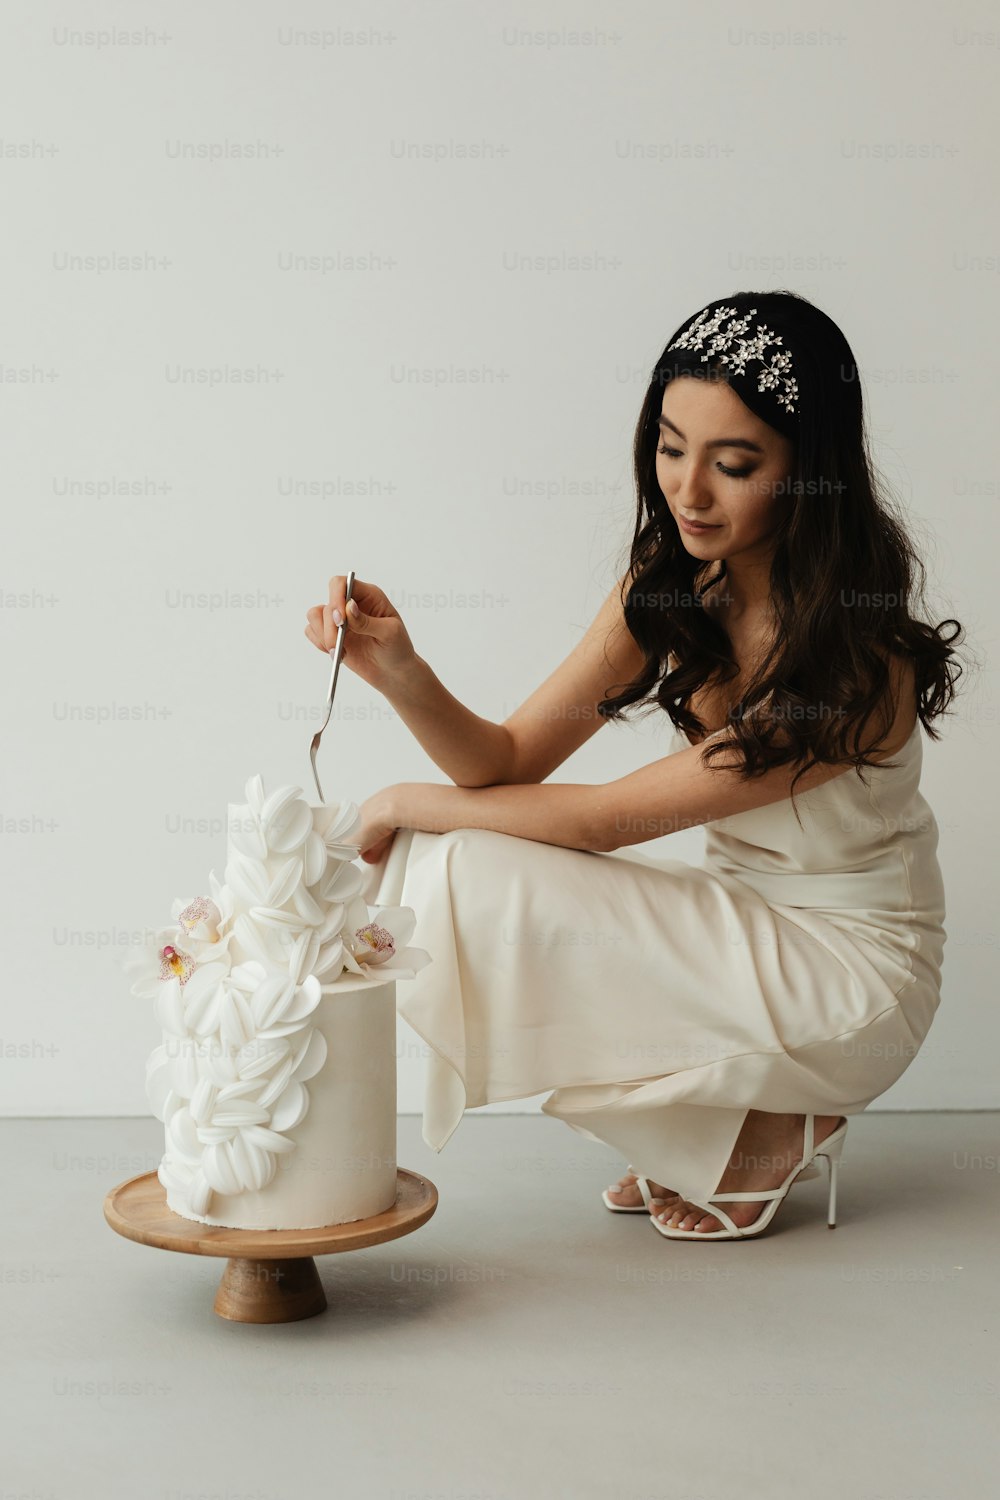 Eine Frau in einem weißen Kleid schneidet eine Hochzeitstorte an